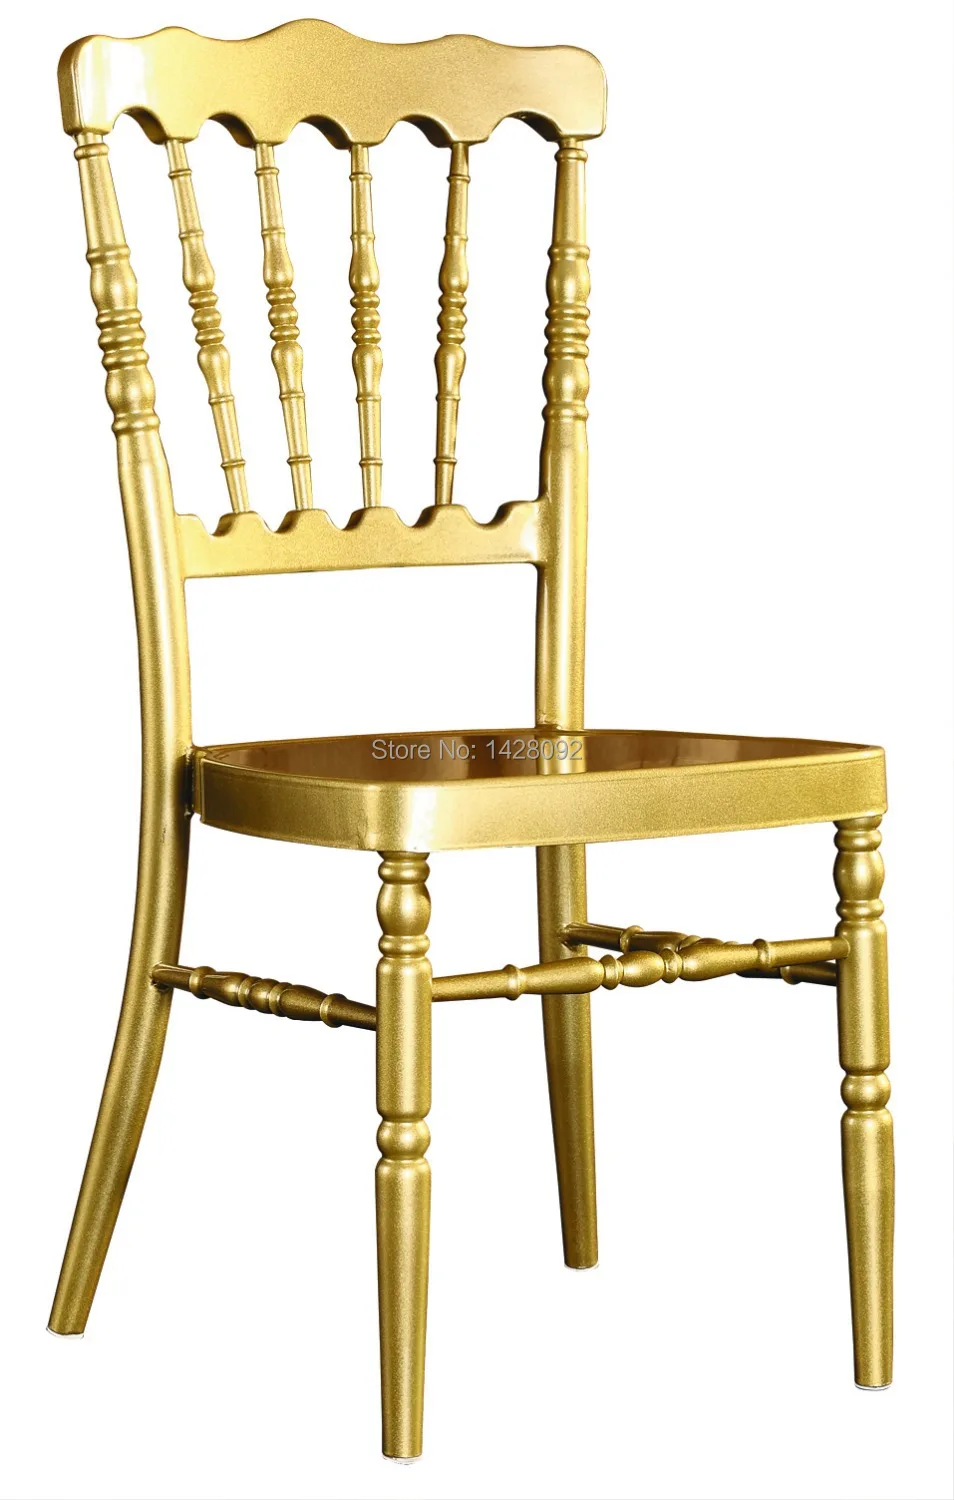 Оптовое качество крепкое Золотое кресло алюминиевое Наполеон для свадебных церемоний вечеринок